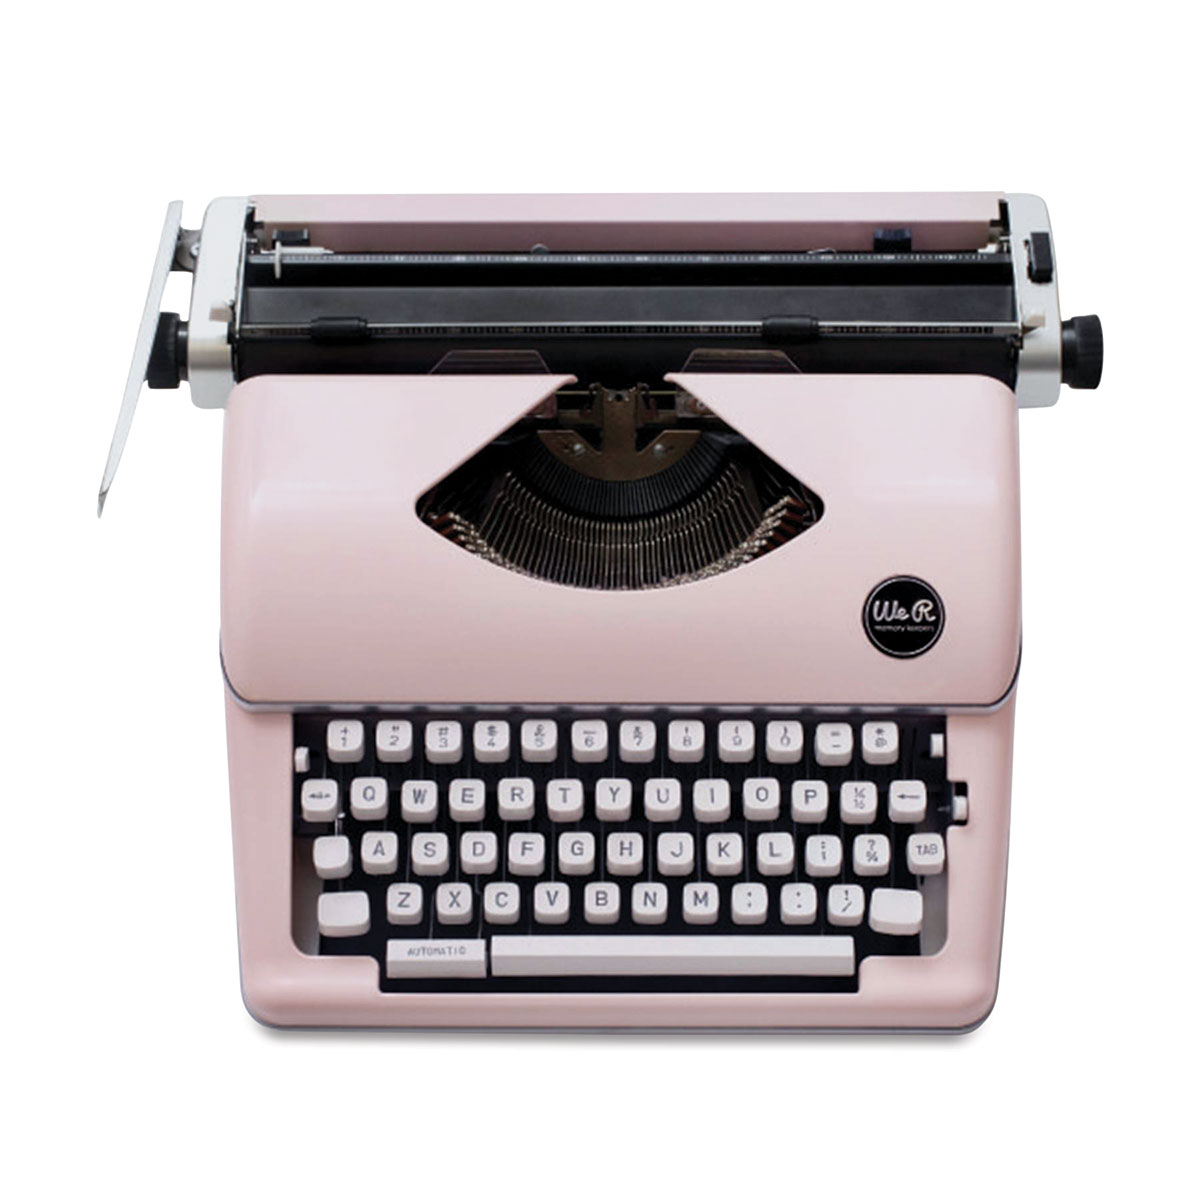 Detail Image Of A Typewriter Nomer 18